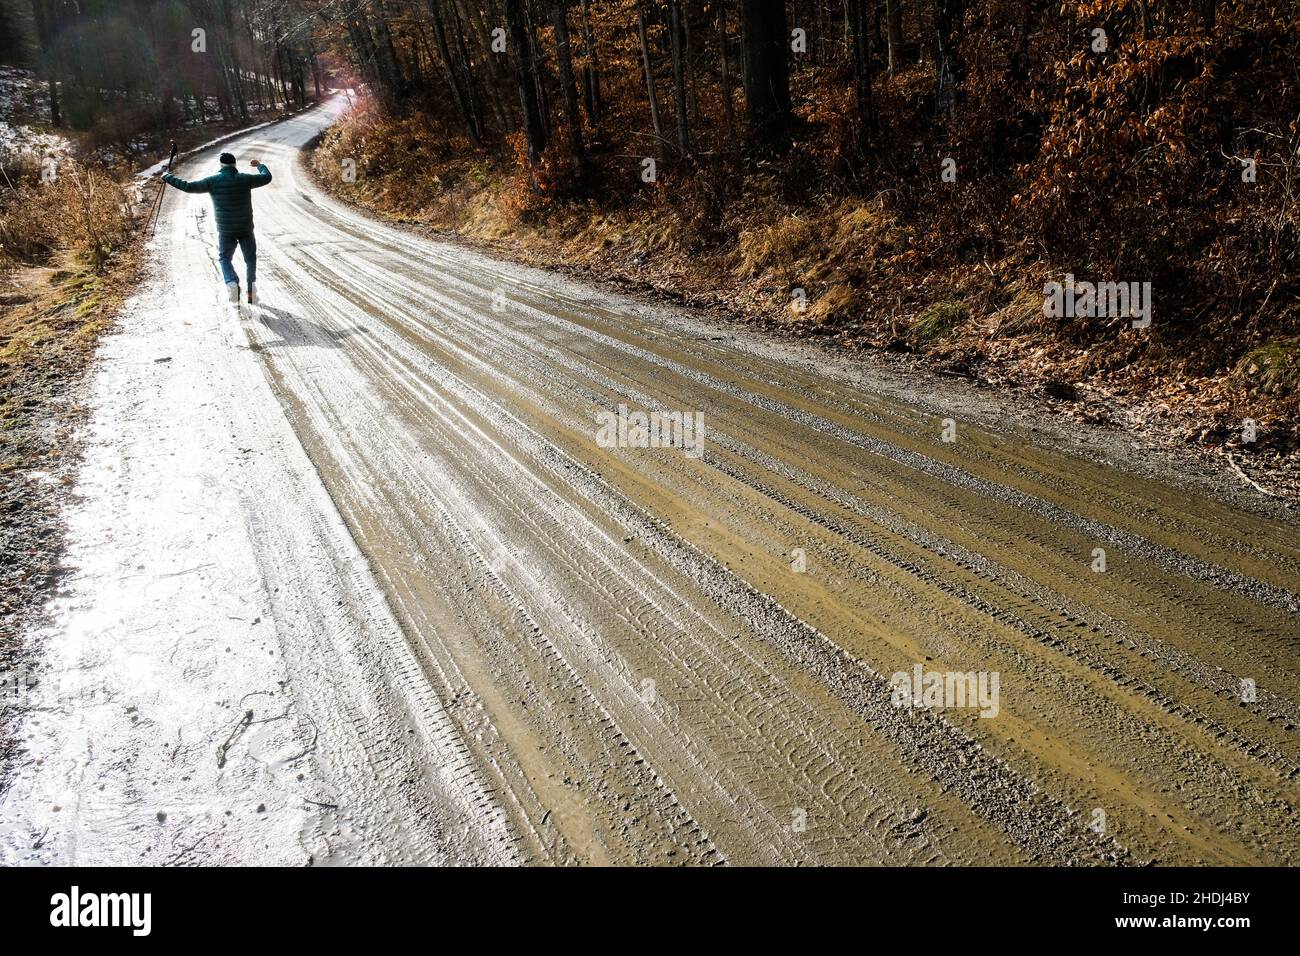 Un solitario hombre mayor camina a lo largo de un camino de tierra rural en East Montpelier, VT, Nueva Inglaterra, Estados Unidos. Foto de stock